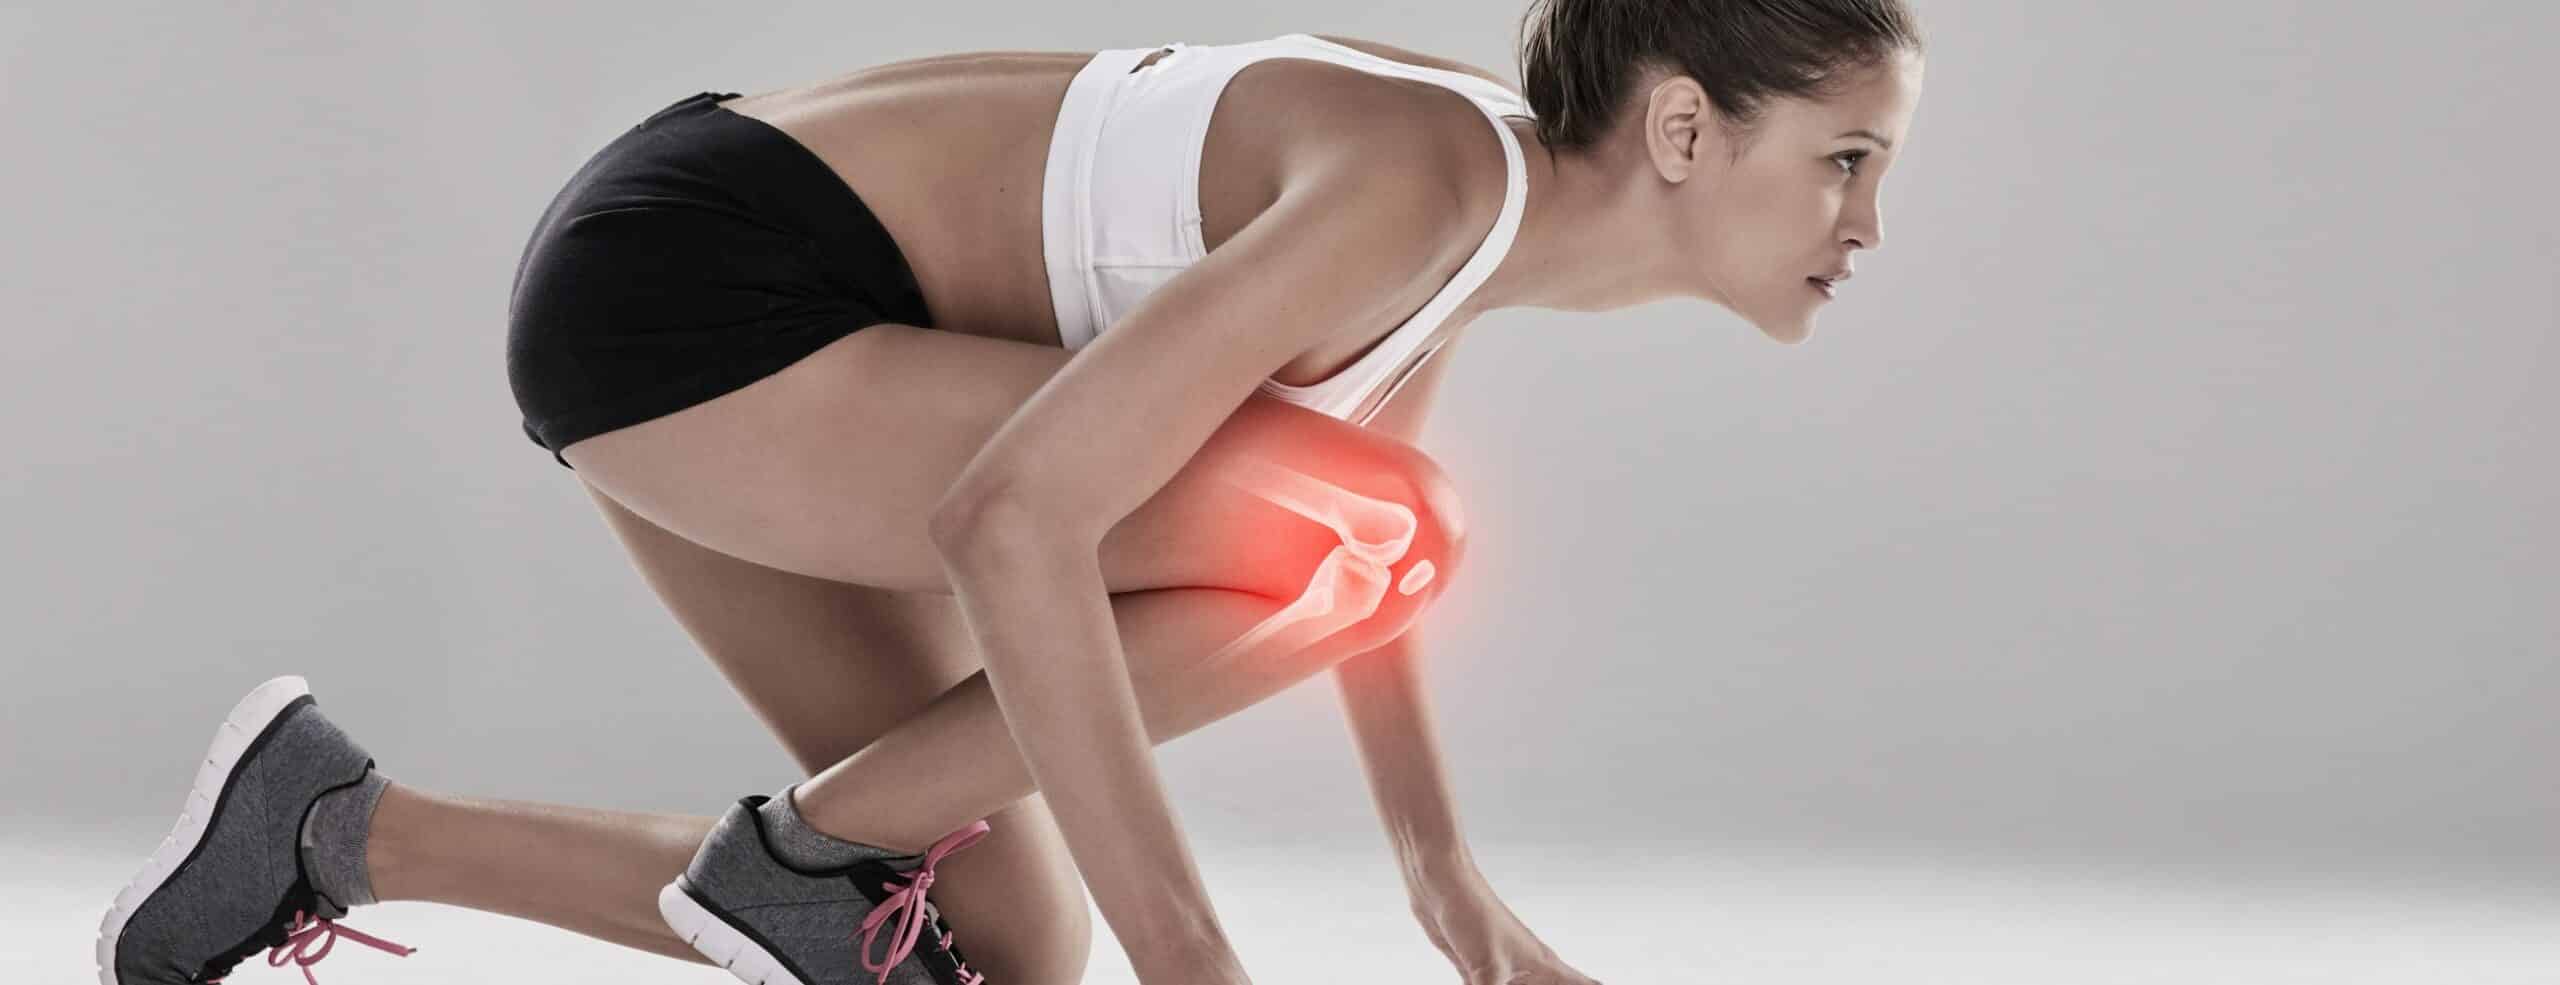 Les blessures du genou chez le sportif | chirurgie orthopédique du genou | Dr Polle | Bois-Guillaume